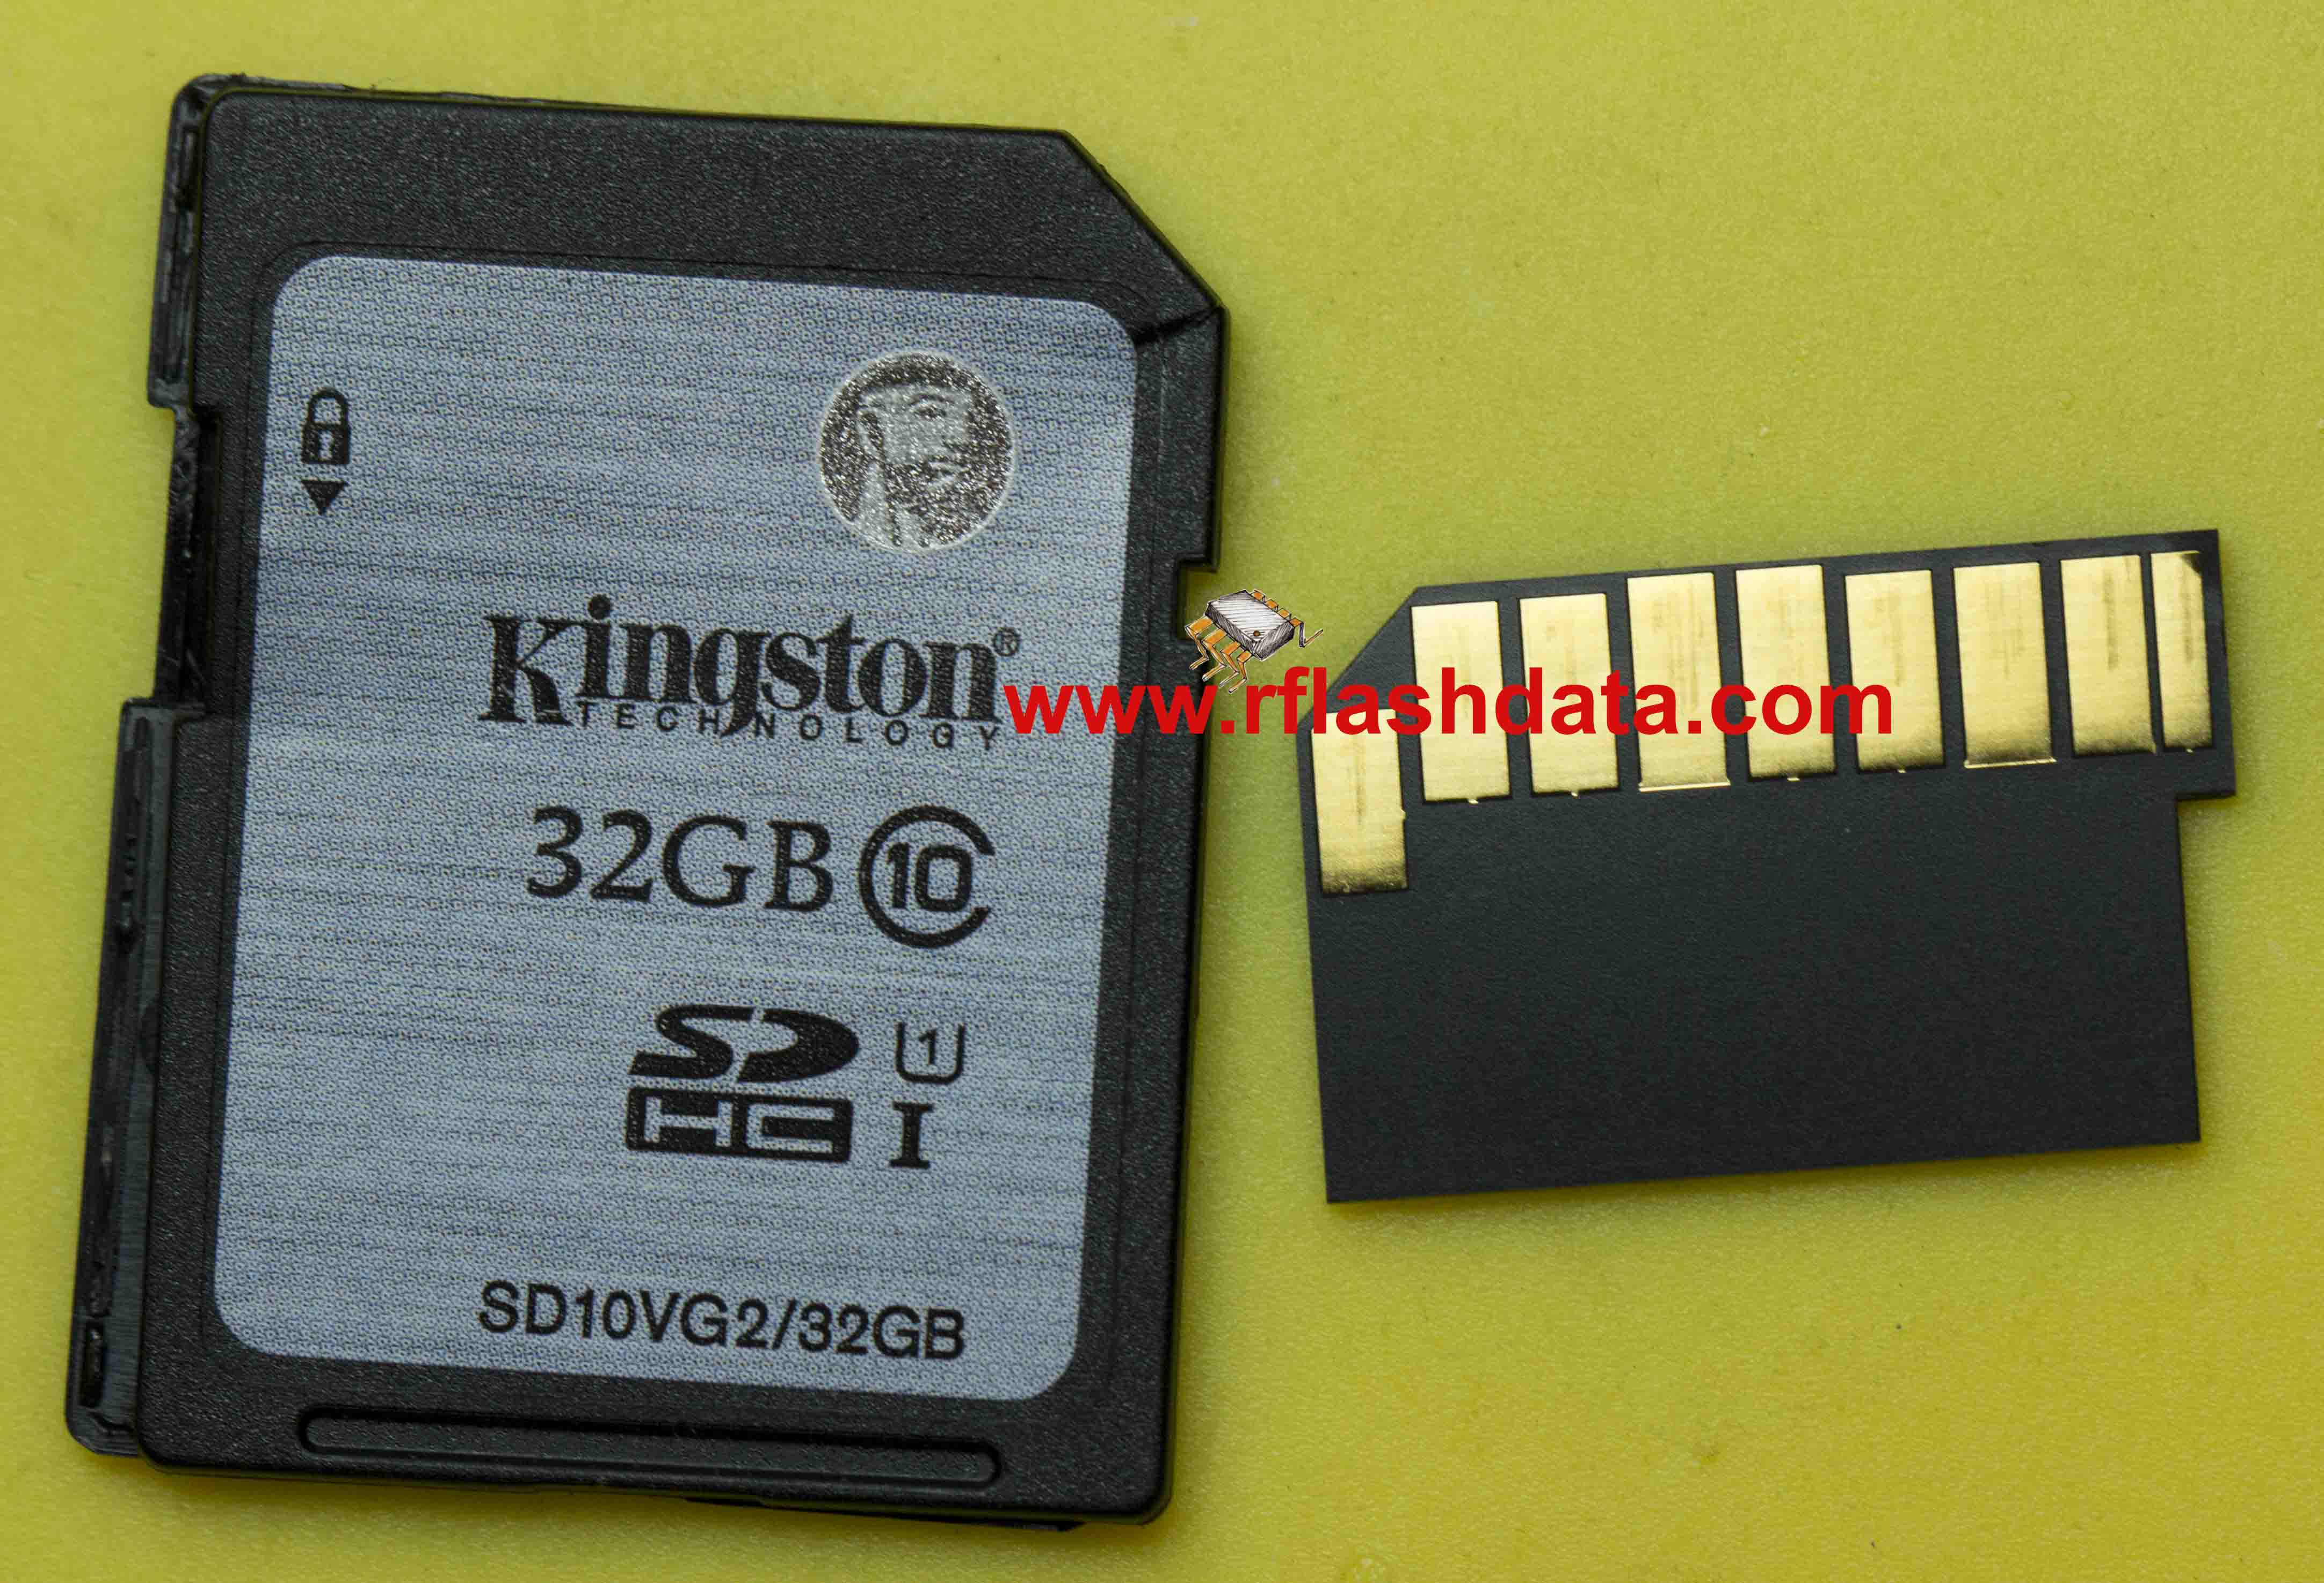 kingston SD card SD10VG2 32GB